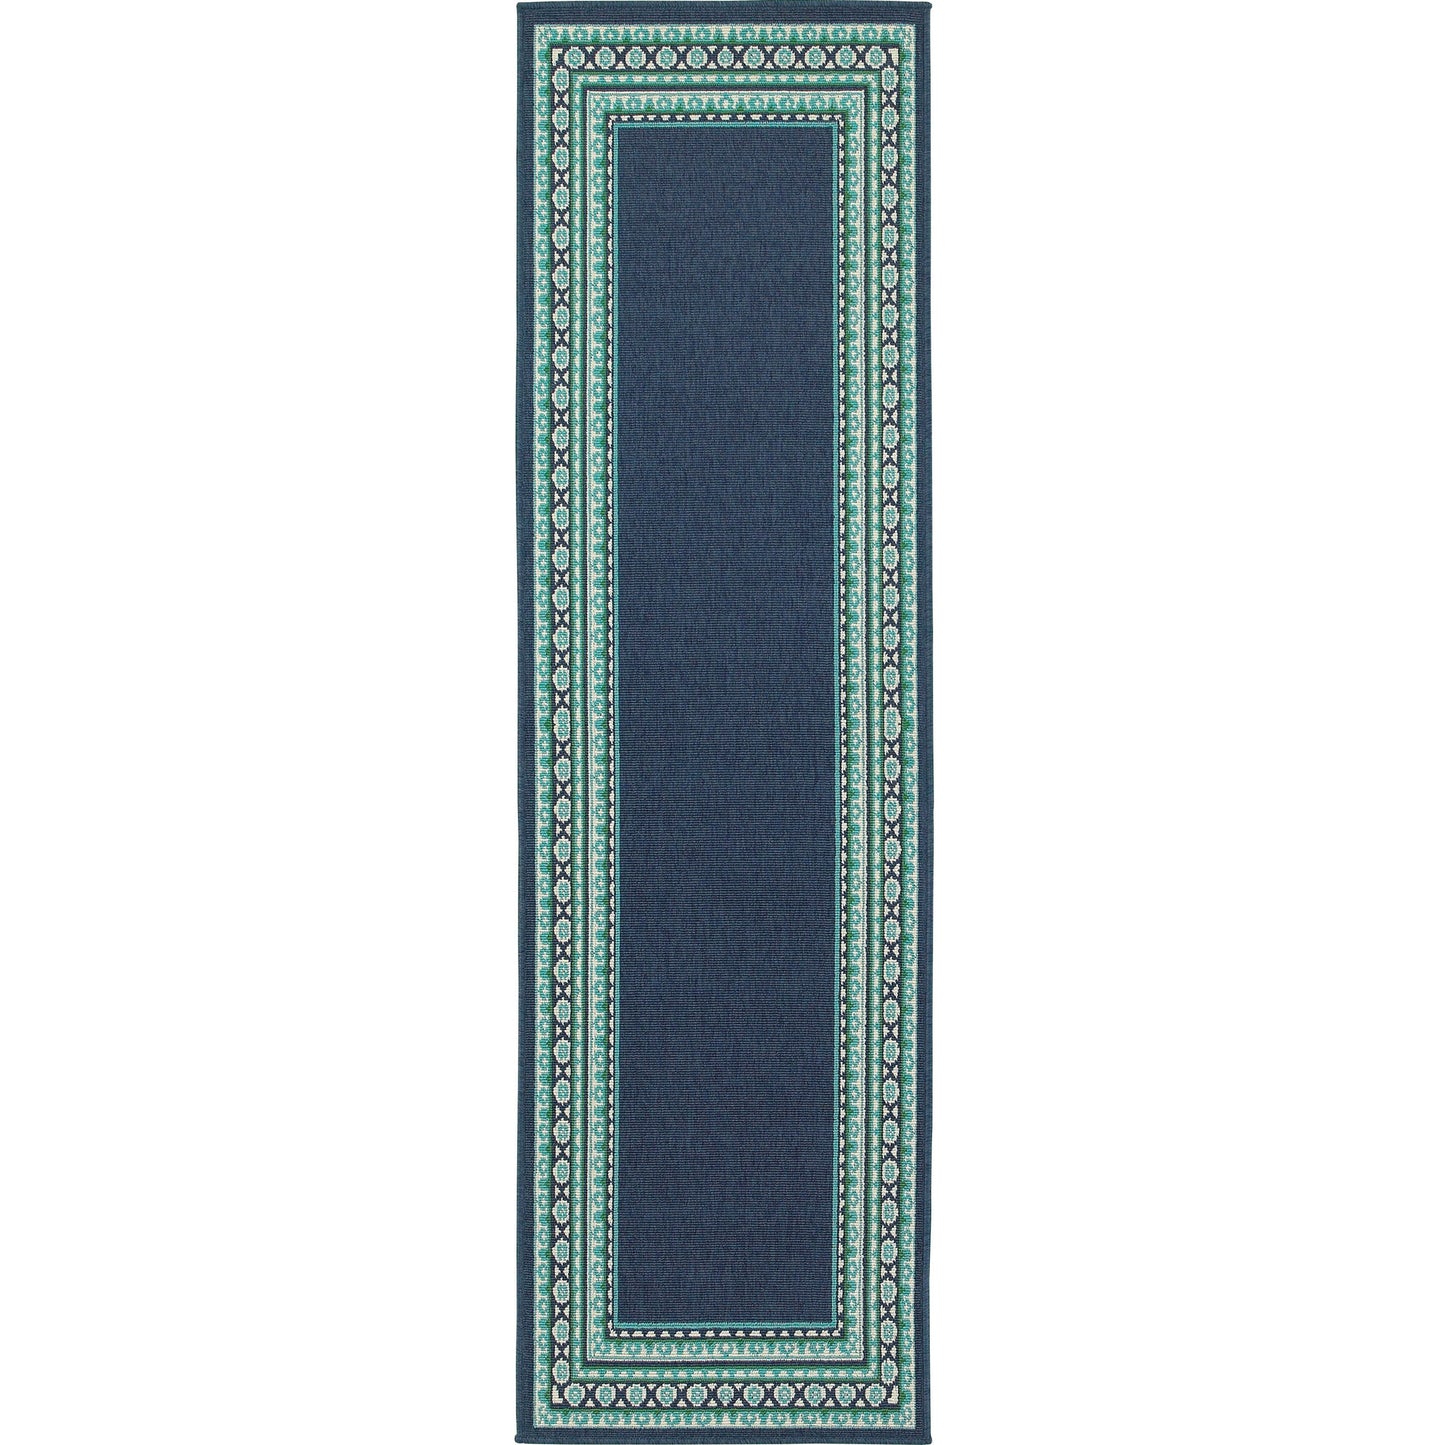 MERIDIAN 9650B Navy, Green Rug - Oriental Weavers